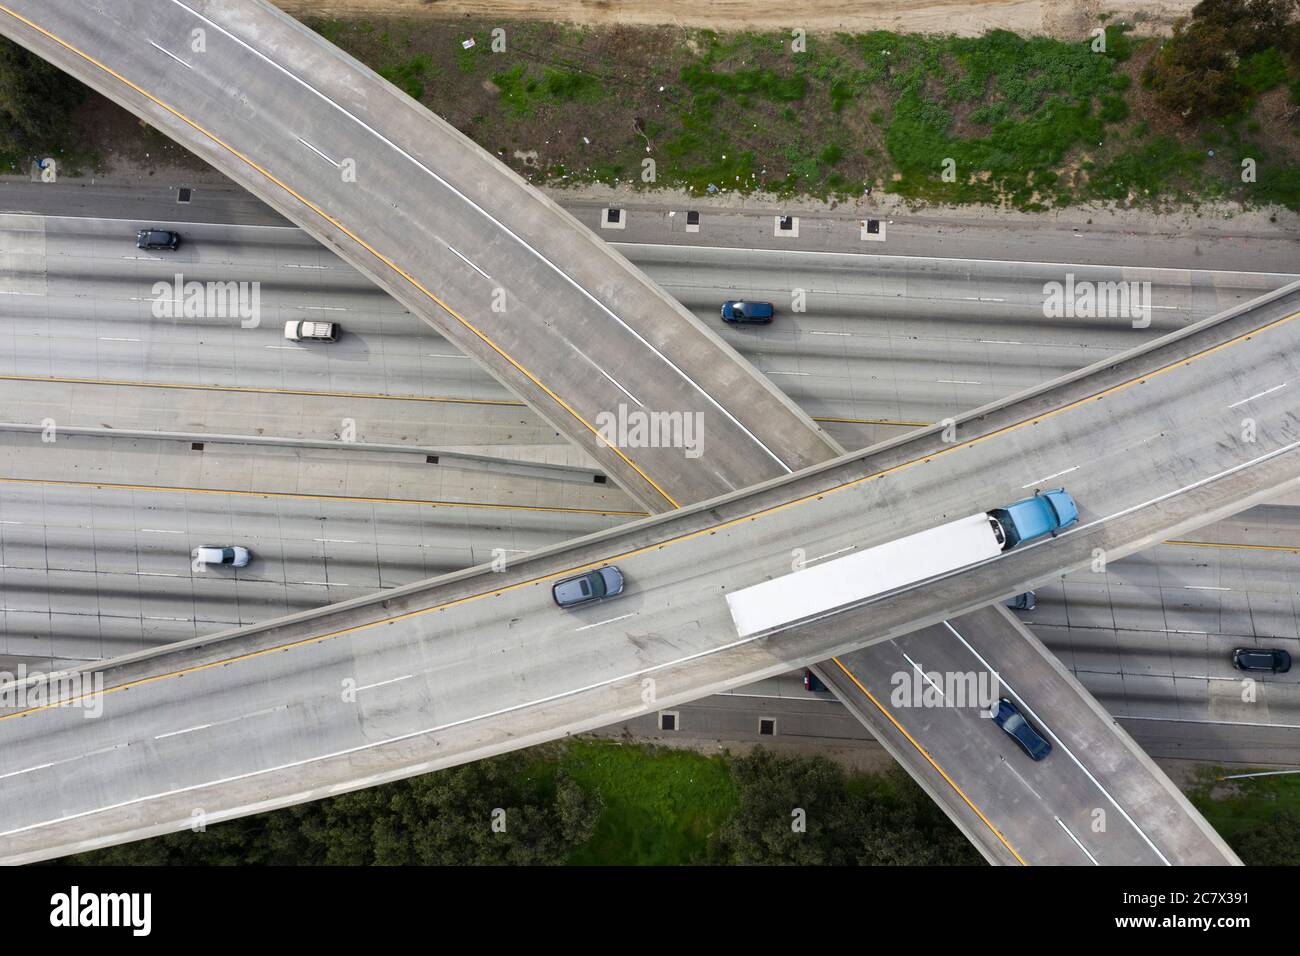 Vistas aéreas del cruce de autopistas interestatal 710 y 105 en los Ángeles, California Foto de stock